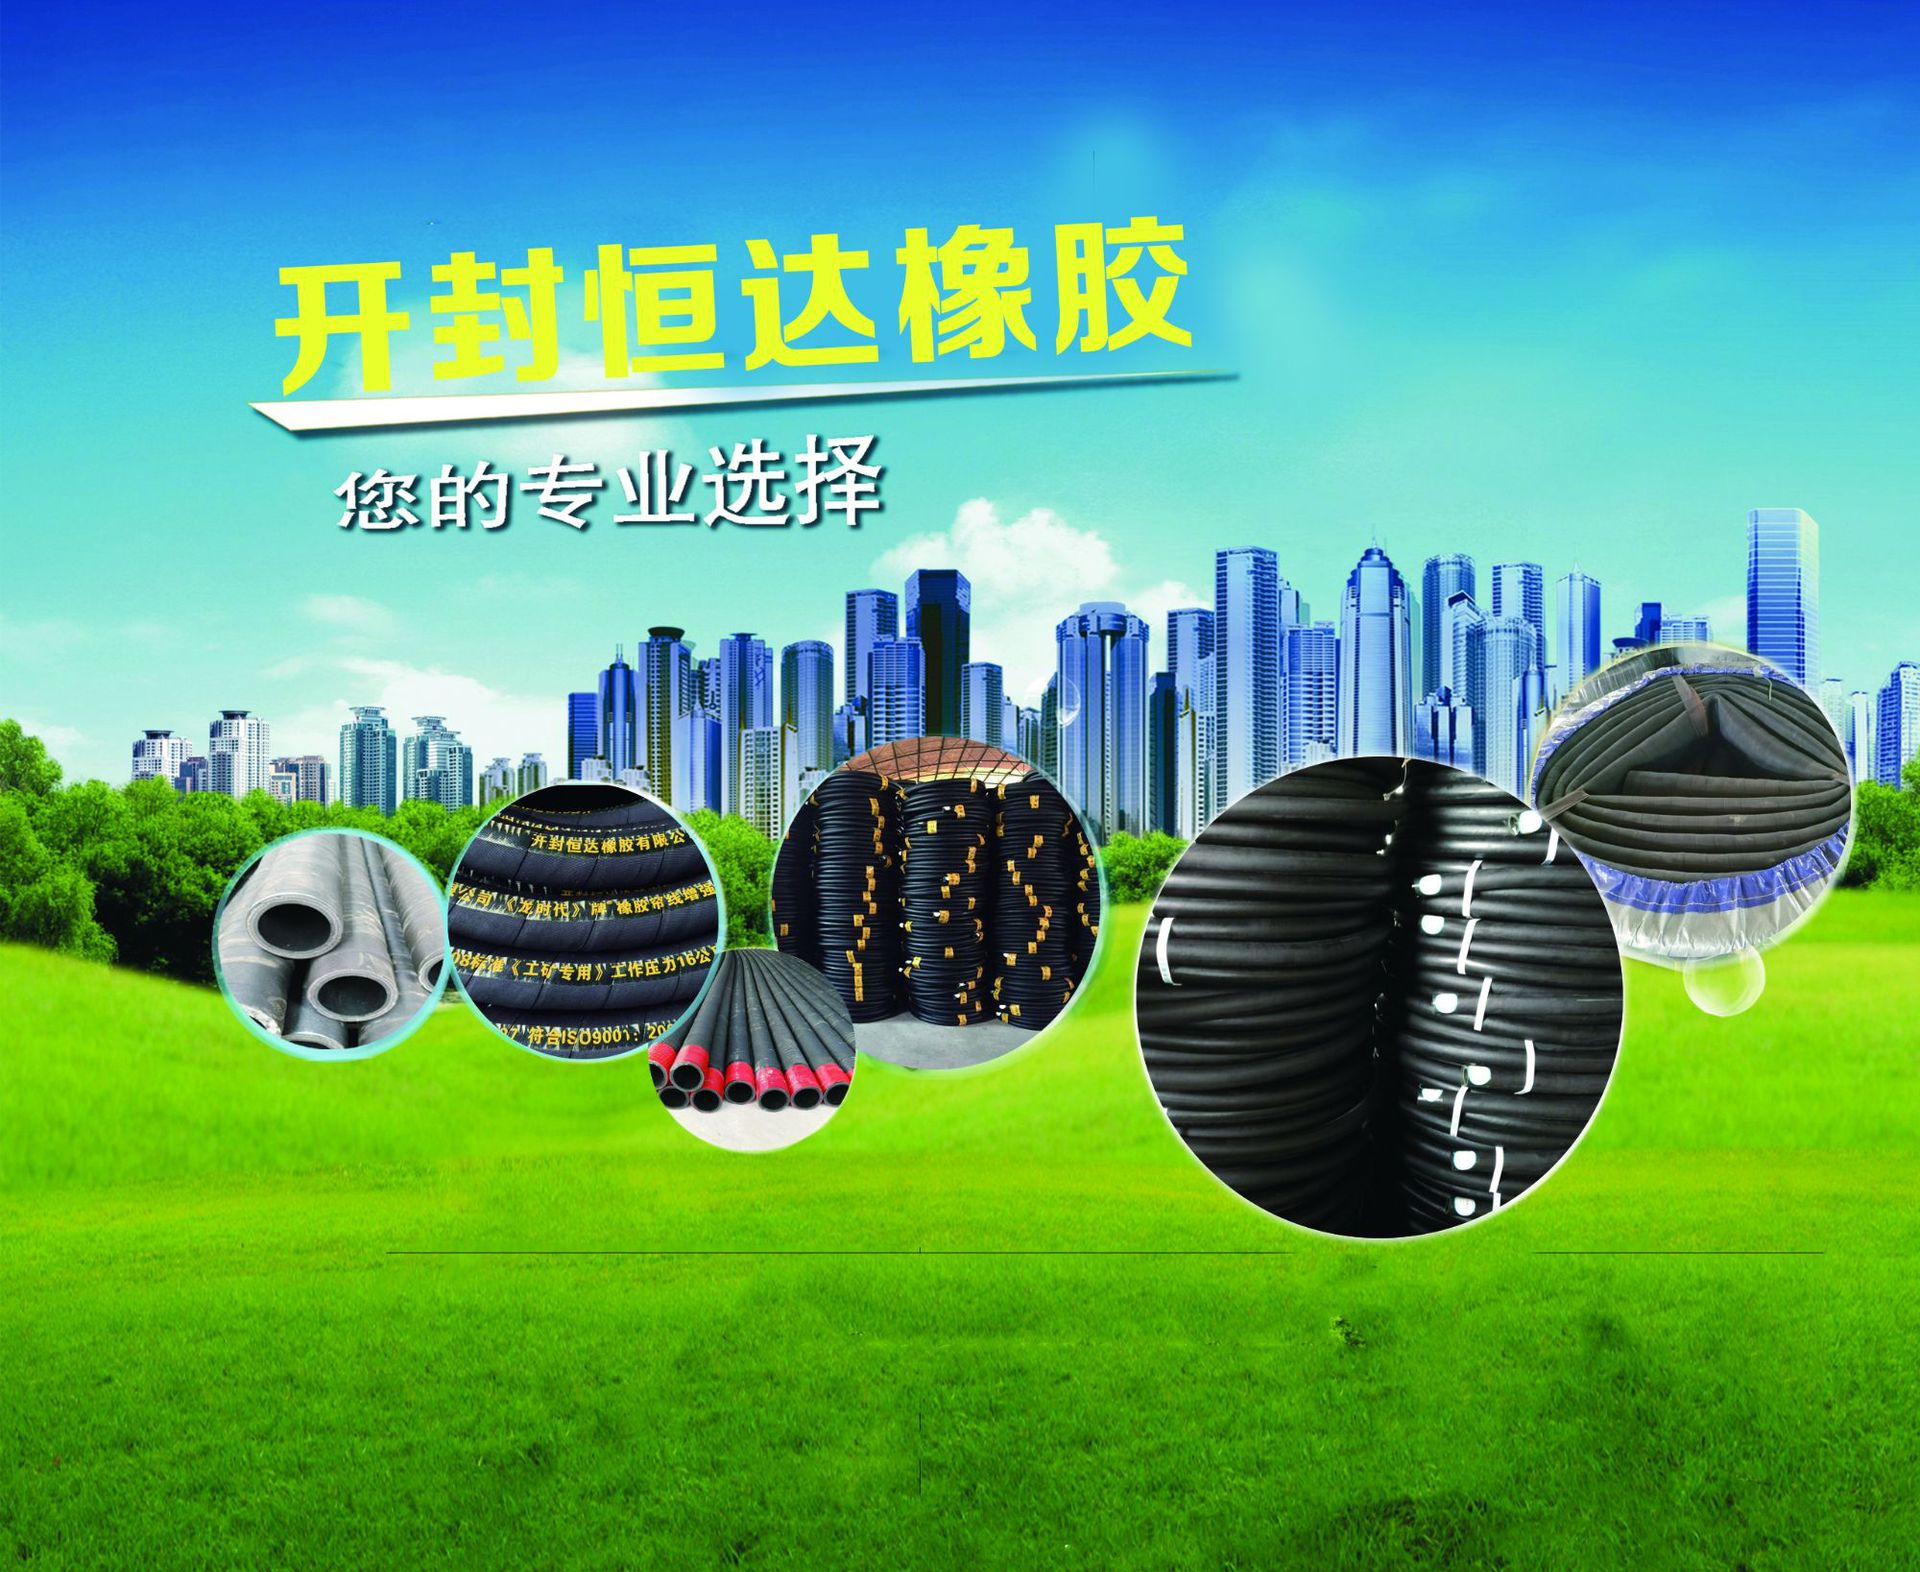 光面橡胶管生产厂家_耐腐蚀橡胶管供应商-开封恒达橡胶有限公司